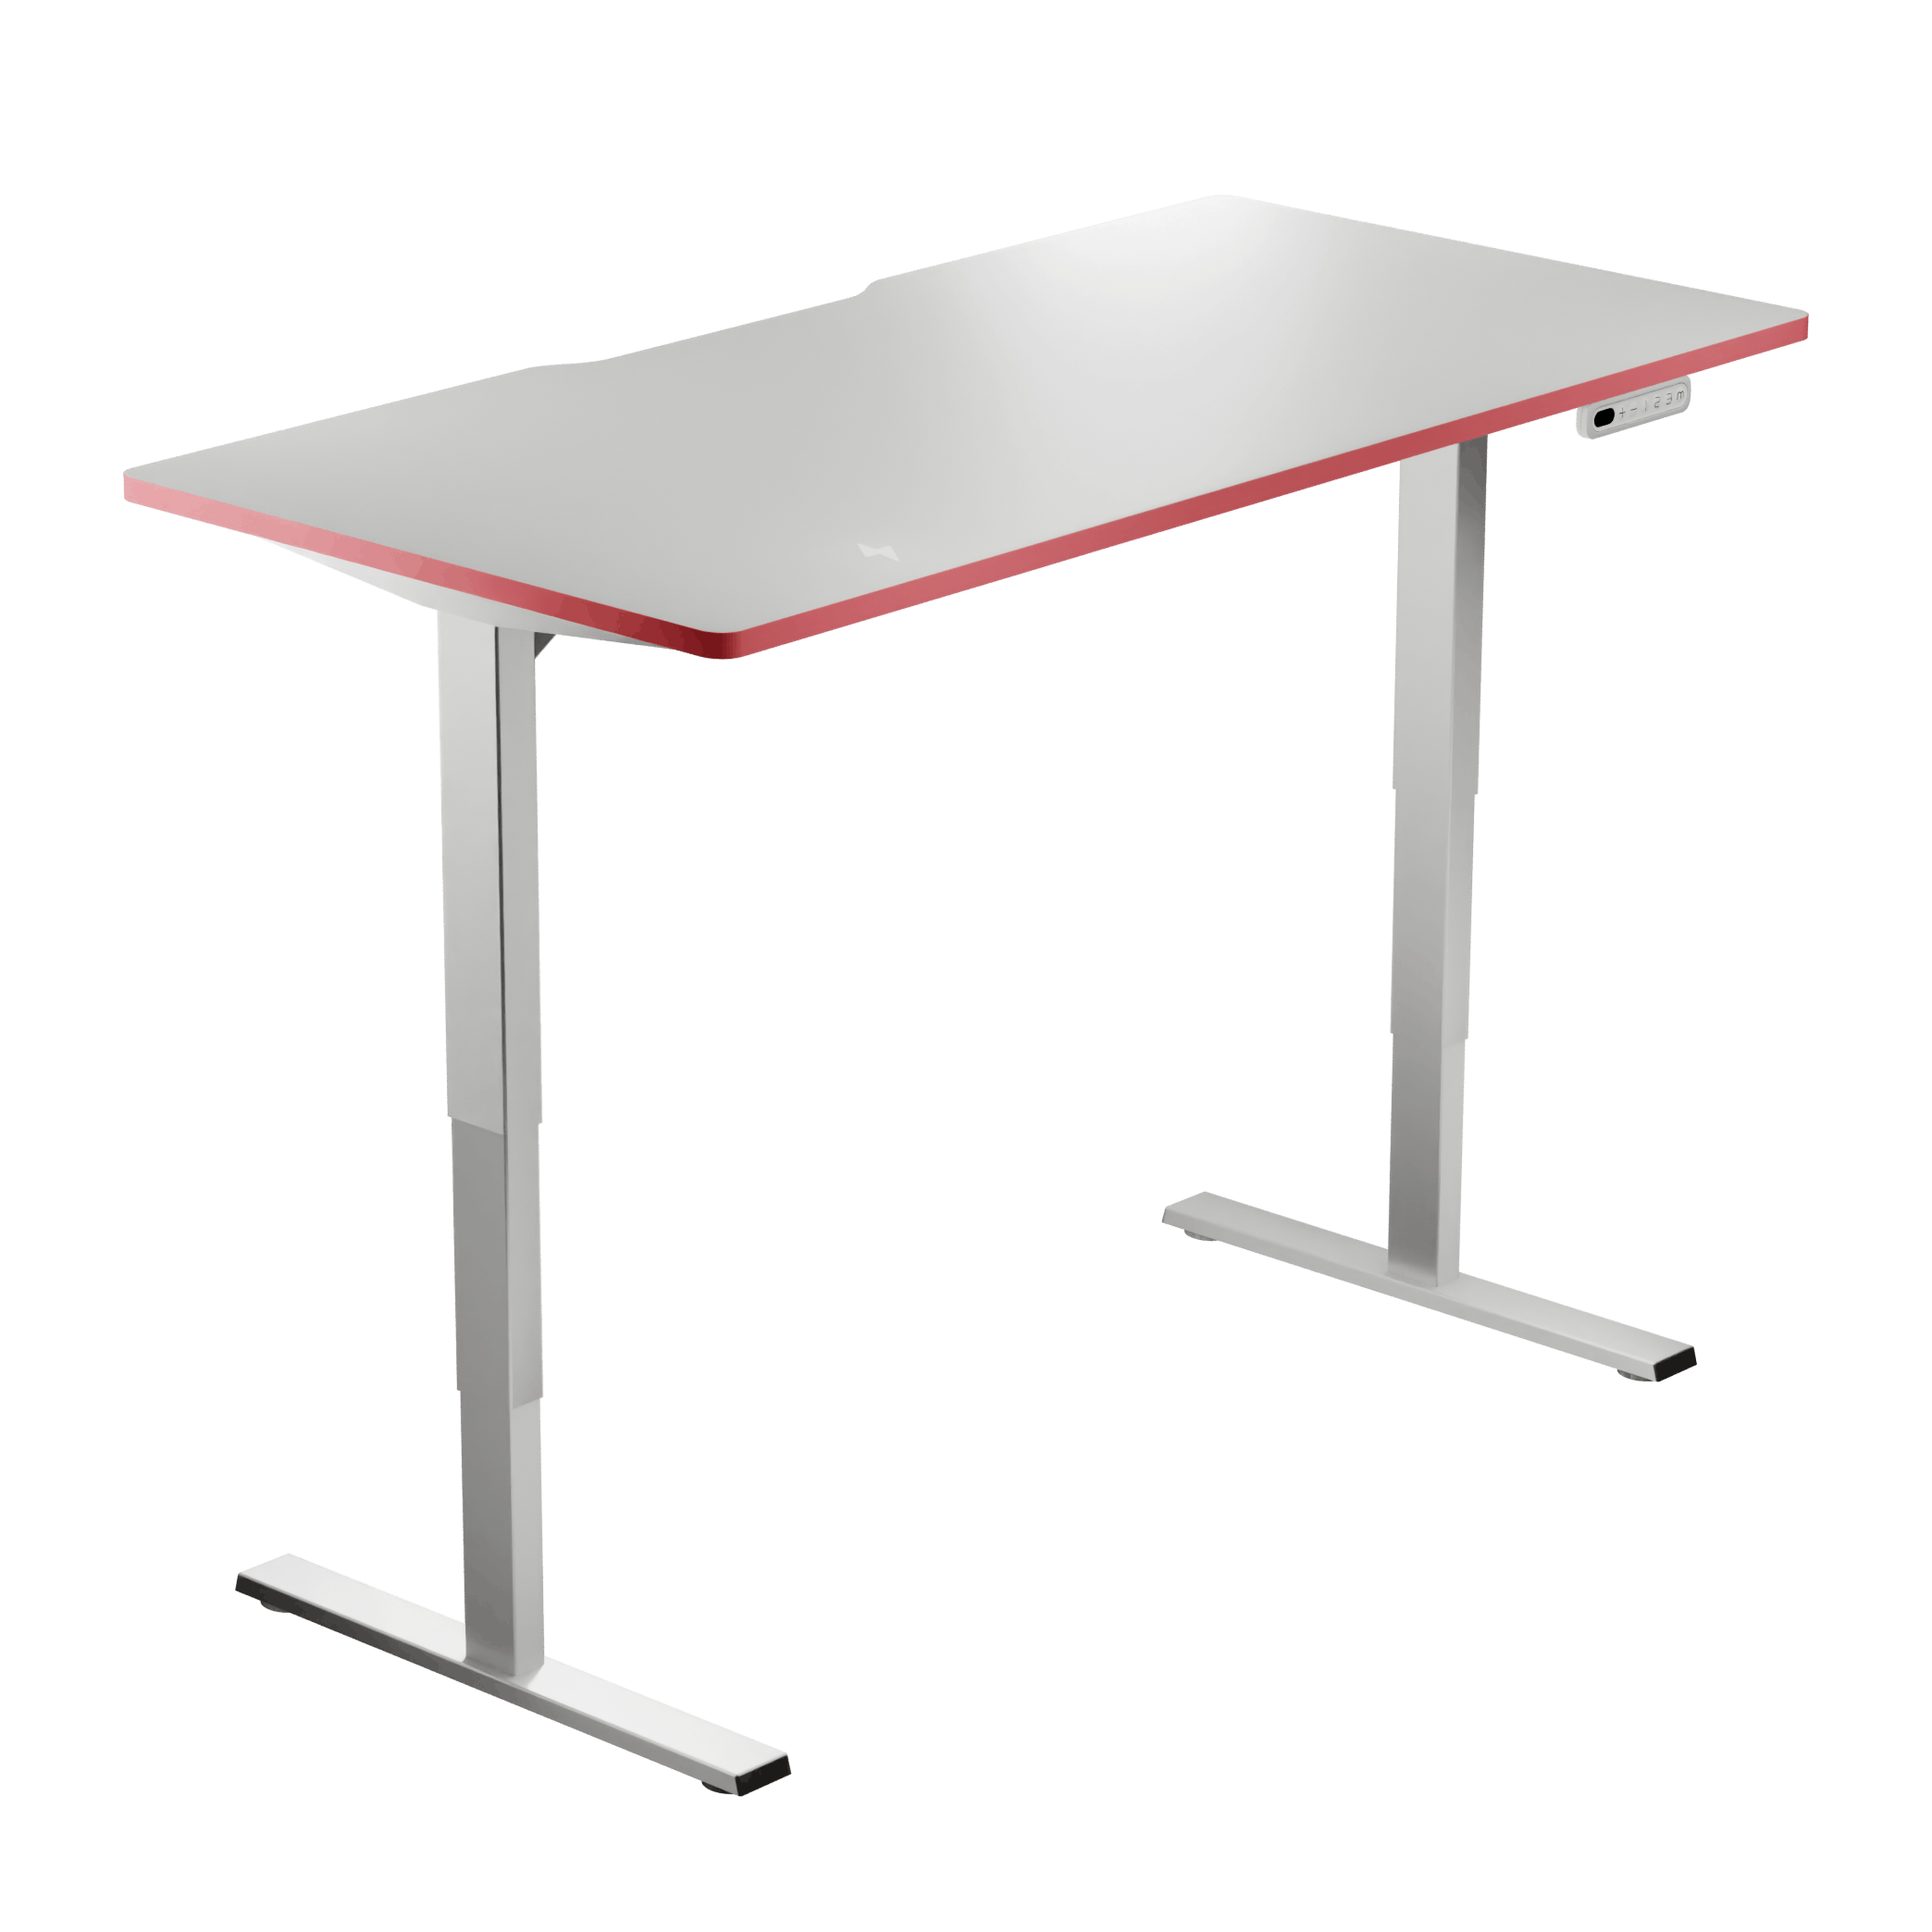 Elektrisch höhenverstellbare Computer Tische von LeetDesk für ergonomisches Arbeiten und Spielen